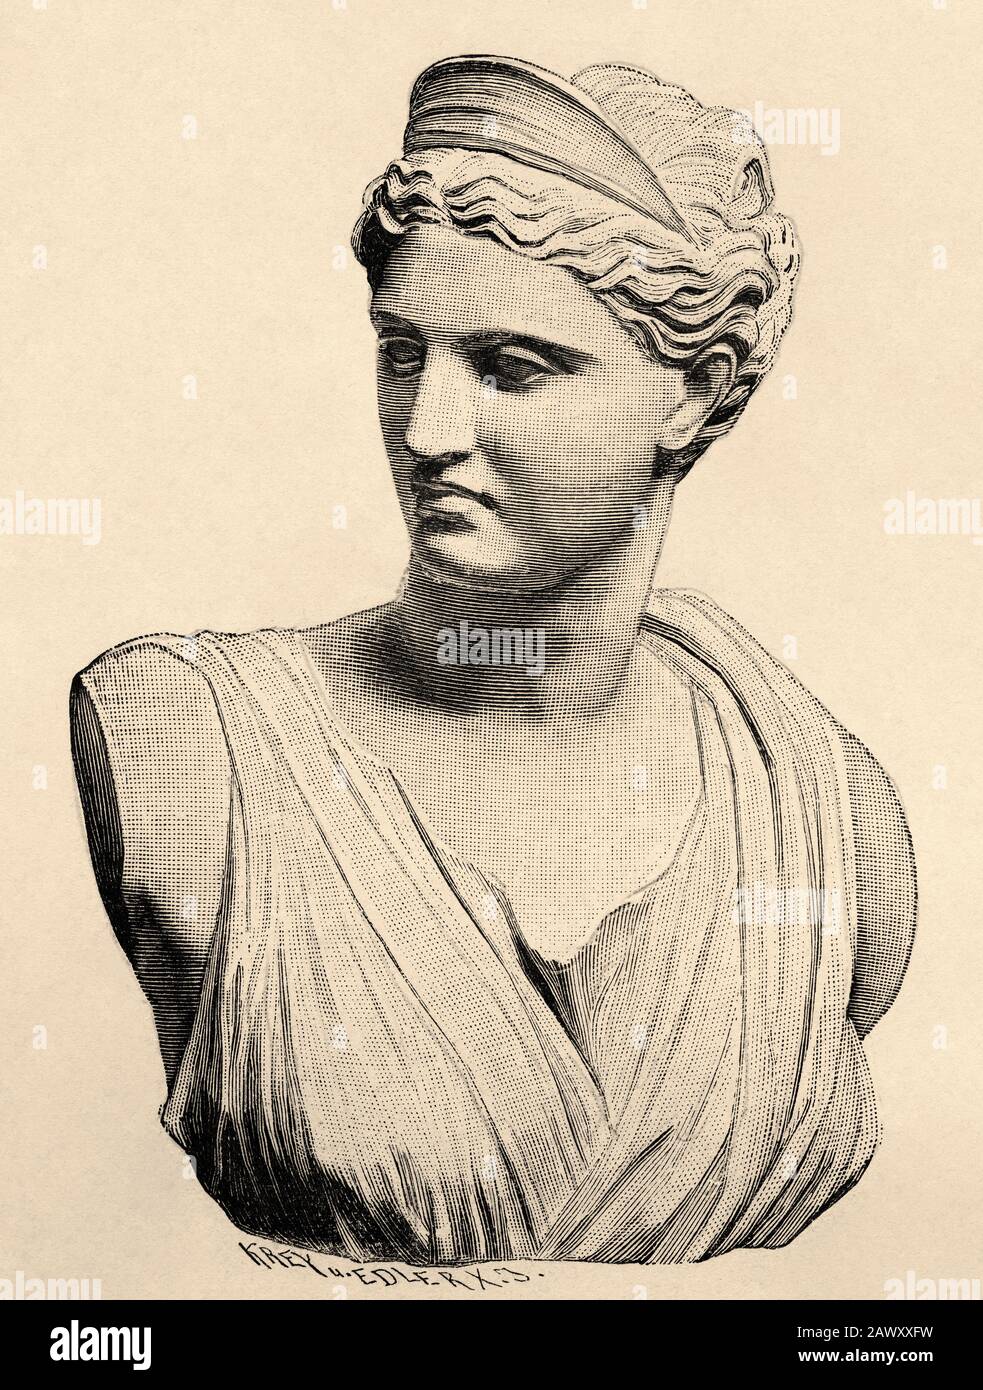 Artemide o Diana di Versailles, la dea della caccia. Grecia storia antica. Vecchia illustrazione dell'incisione dal libro Storia universale di Oscar J. Foto Stock